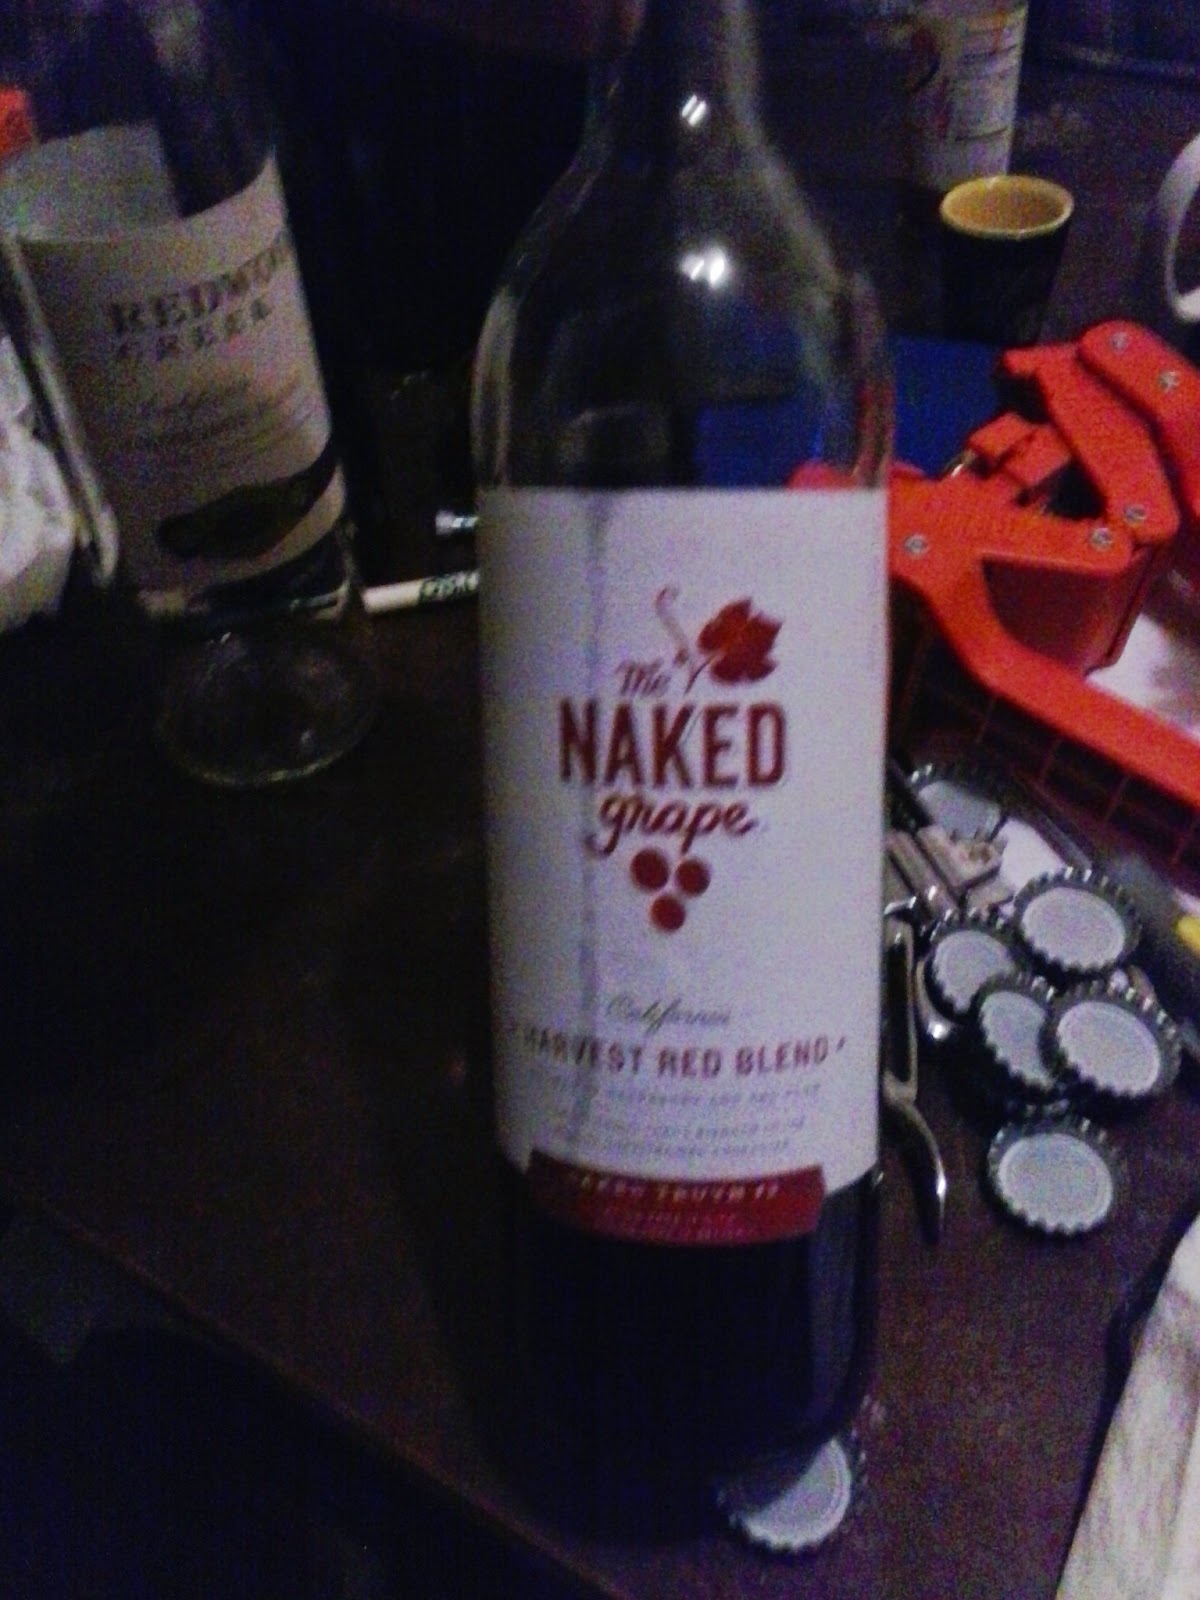 Kroger - The Naked Grape Harvest Red Blend Wine, 750 mL